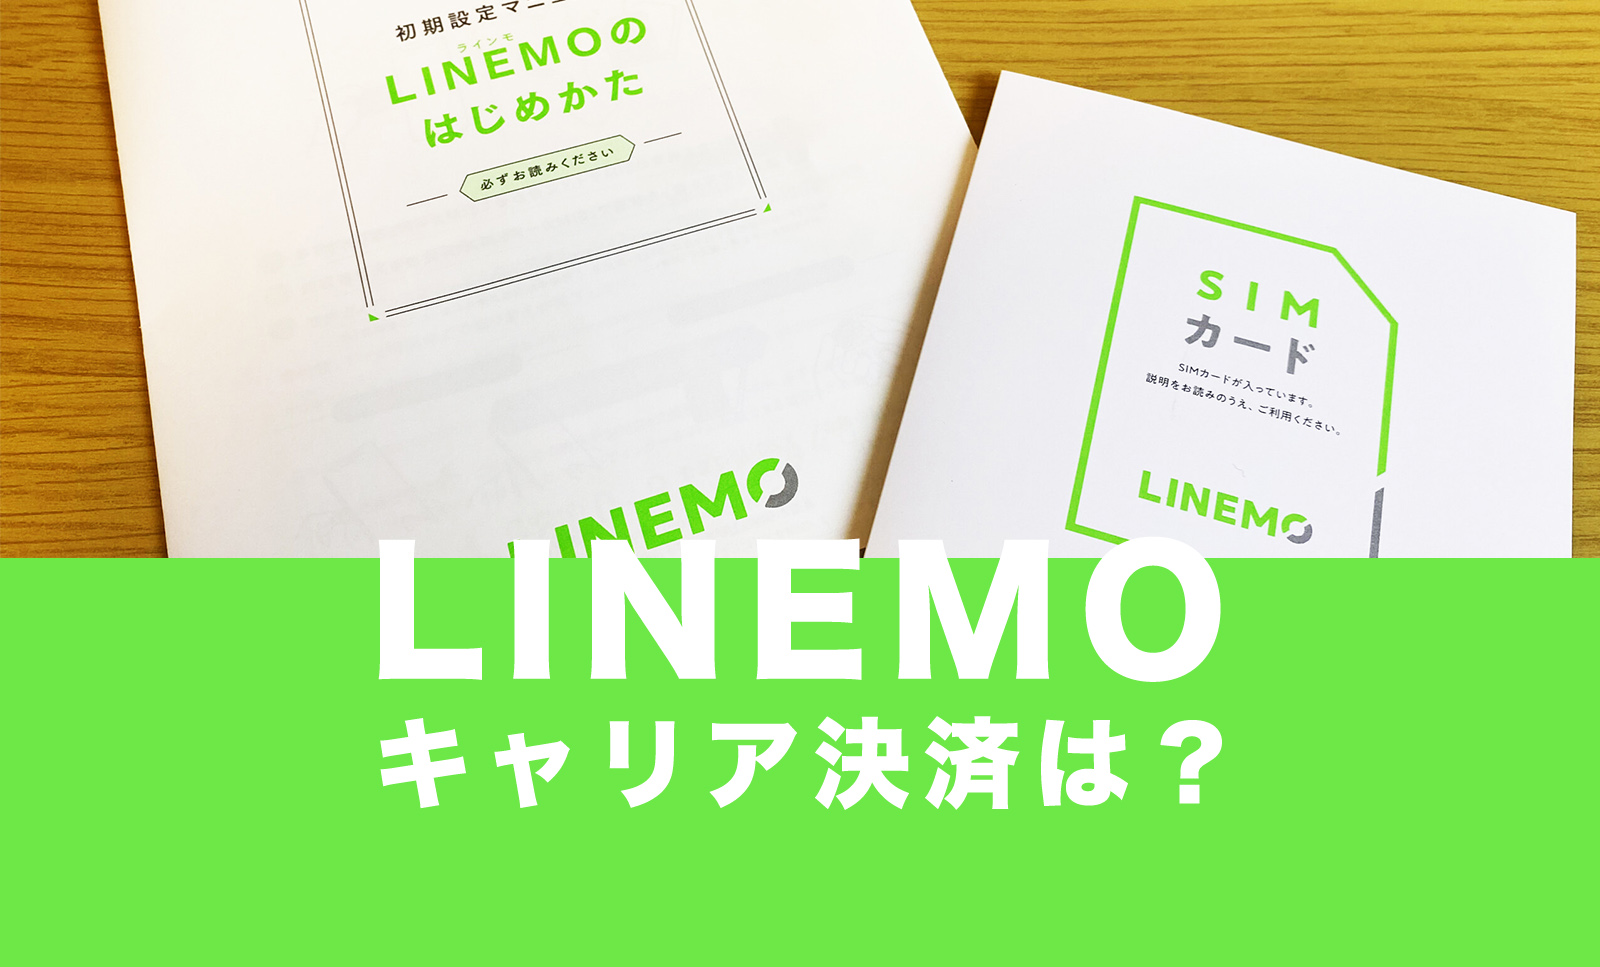 LINEMO(ラインモ)はソフトバンクまとめて支払いが利用可能のサムネイル画像